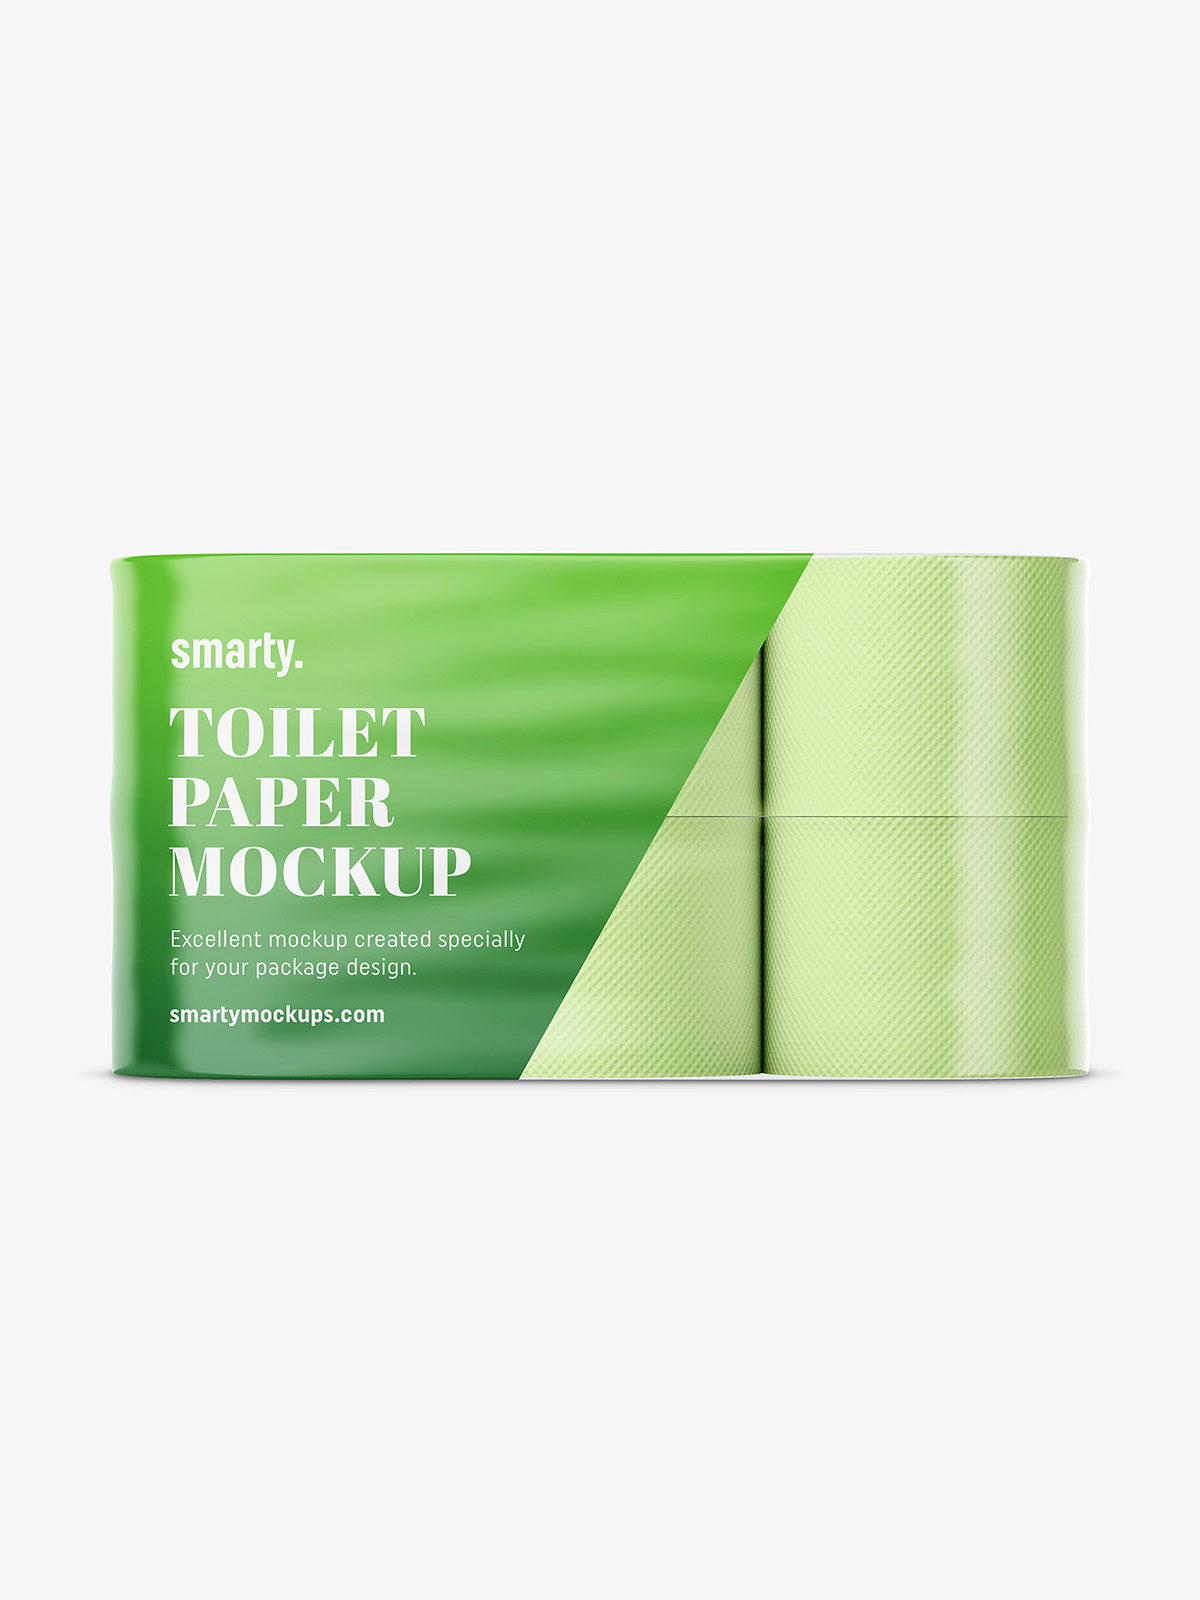 Download Toilet paper mockup / 6 rolls - Smarty Mockups